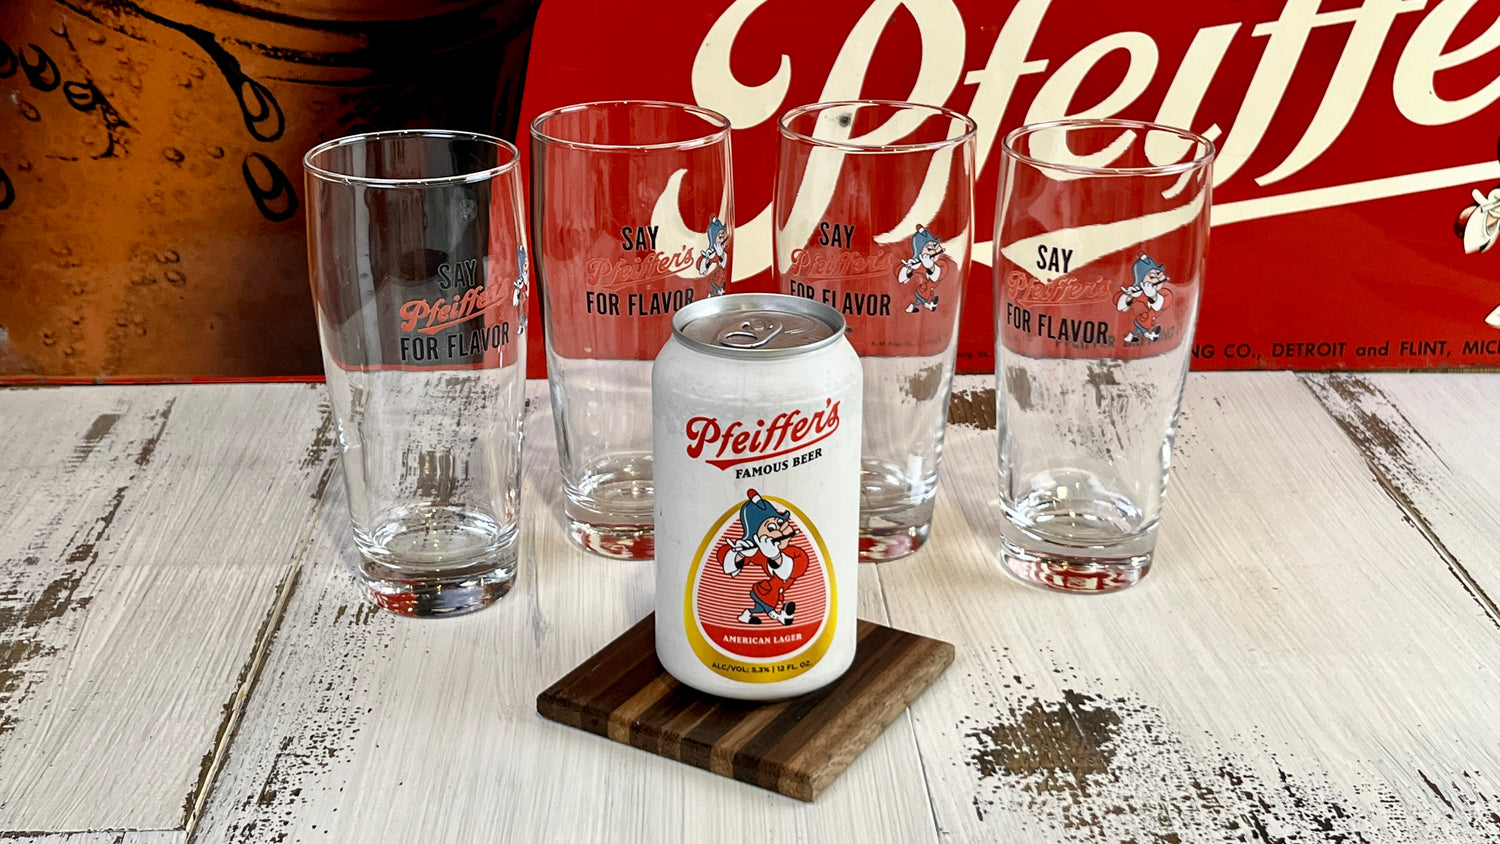 Pfeiffer's Famous Beer Glasses